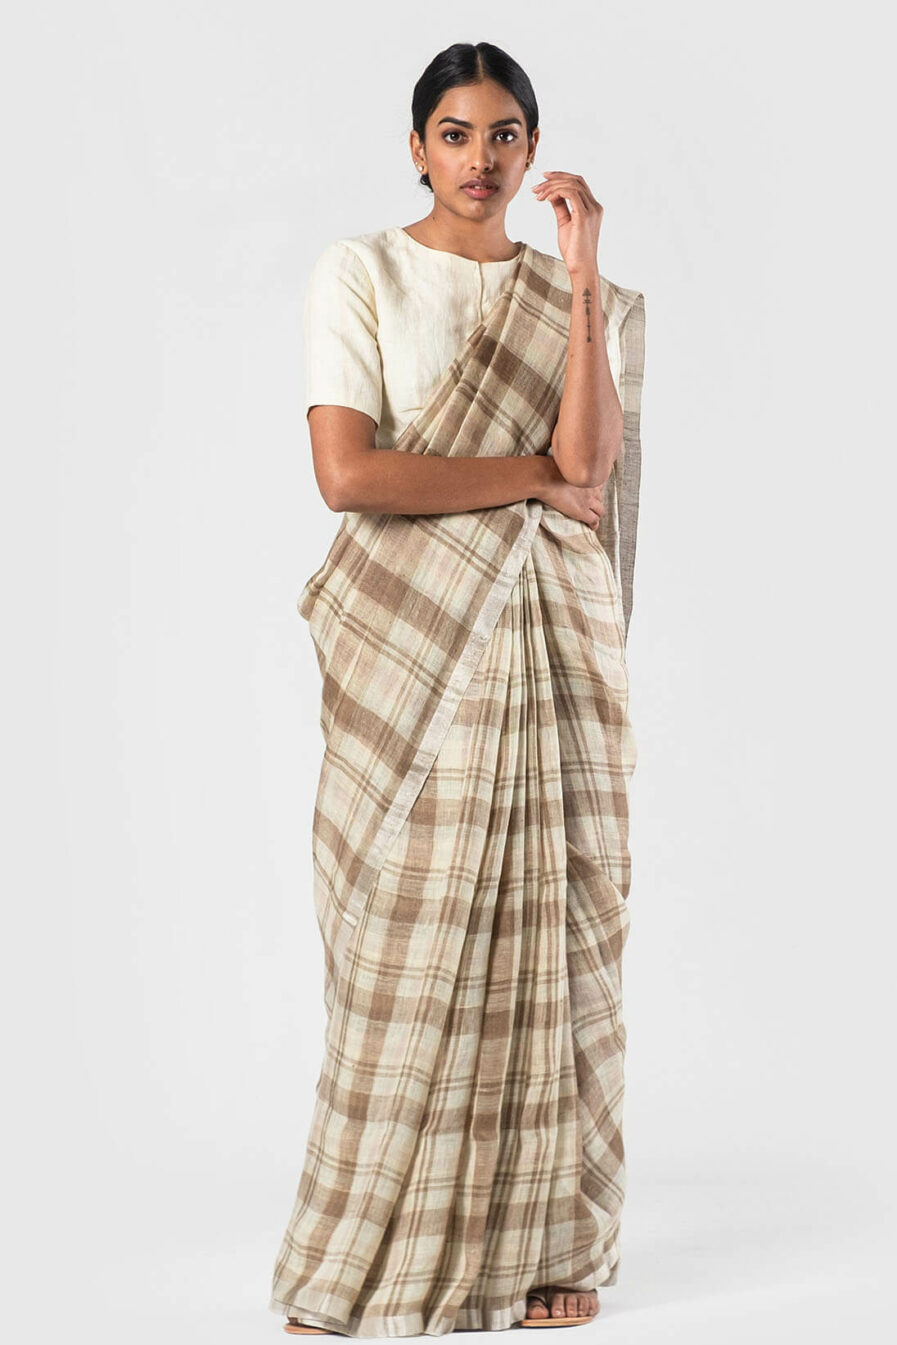 Anavila Khaki off white Summer plaid sari